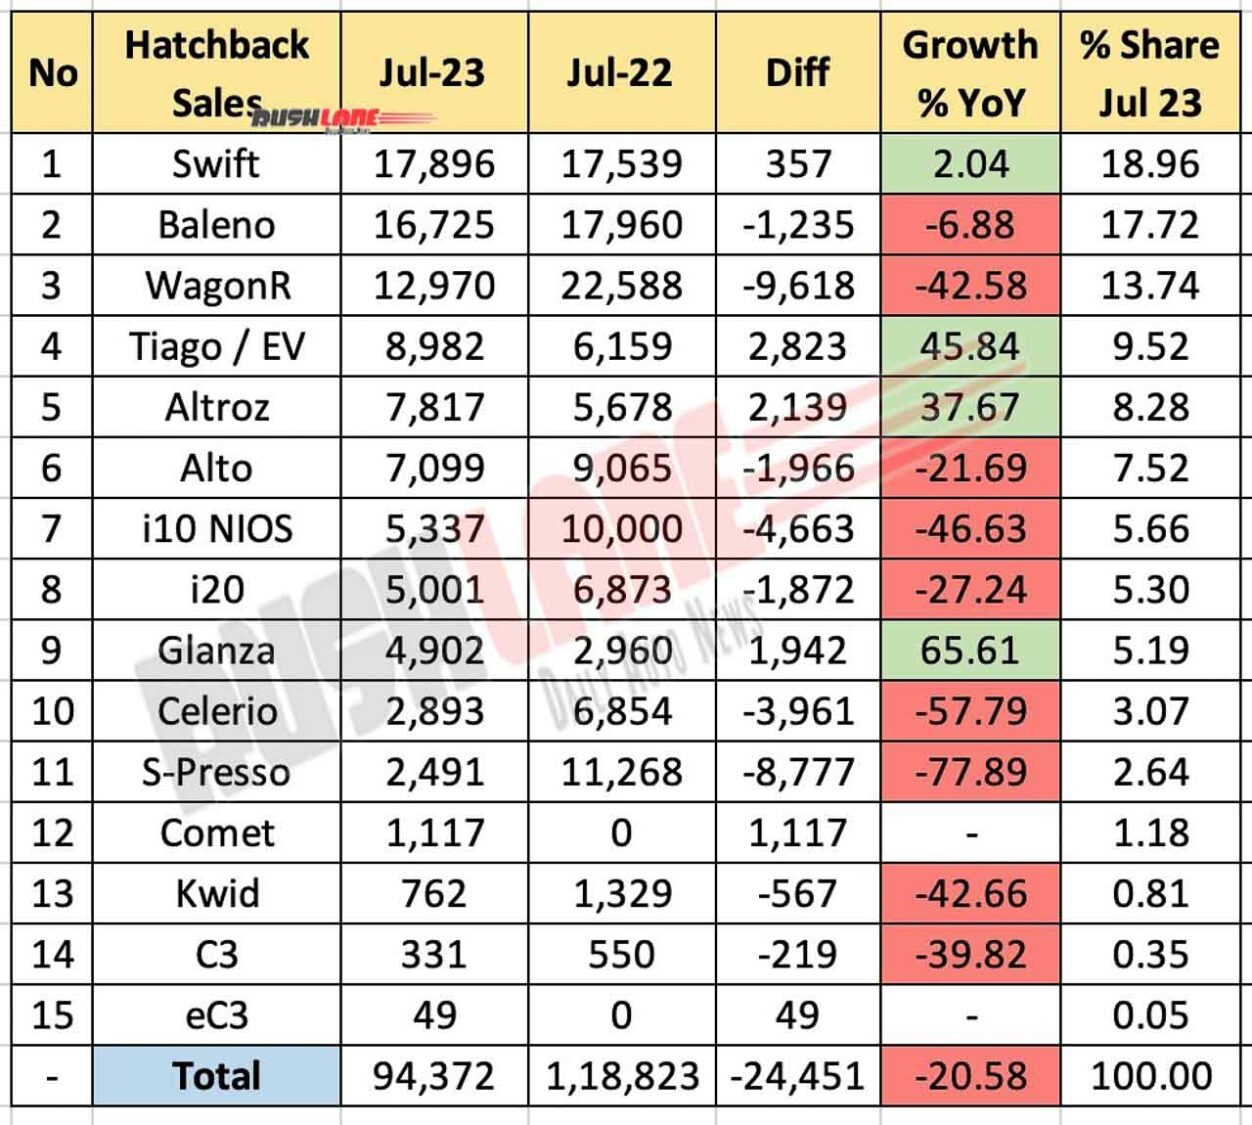 Hatchback sales July 2023 vs July 2022 - YoY comparison